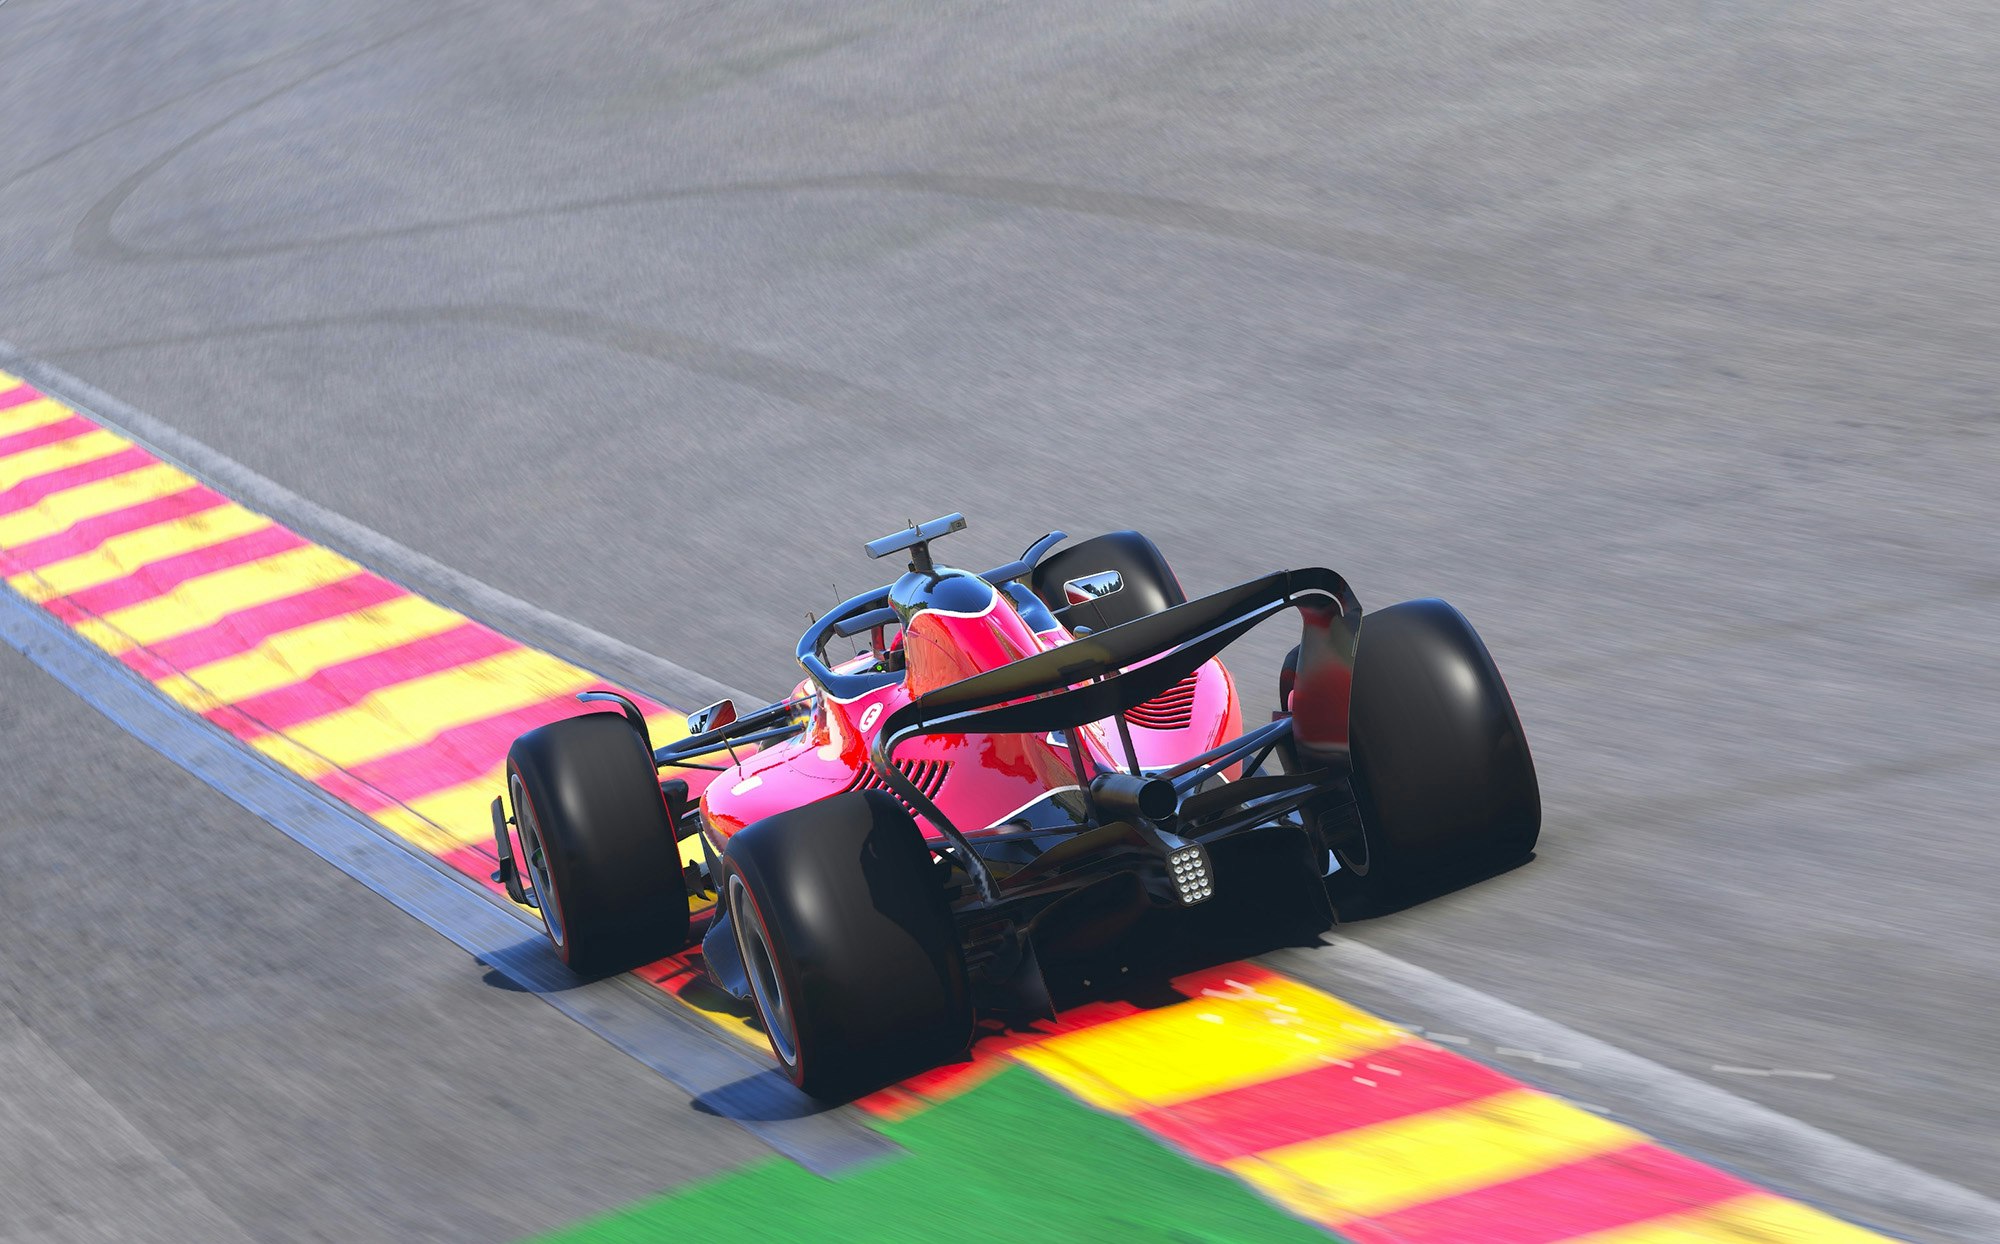 Rød Formel 1-bil kjører på motorbane. 3D illustrasjon.